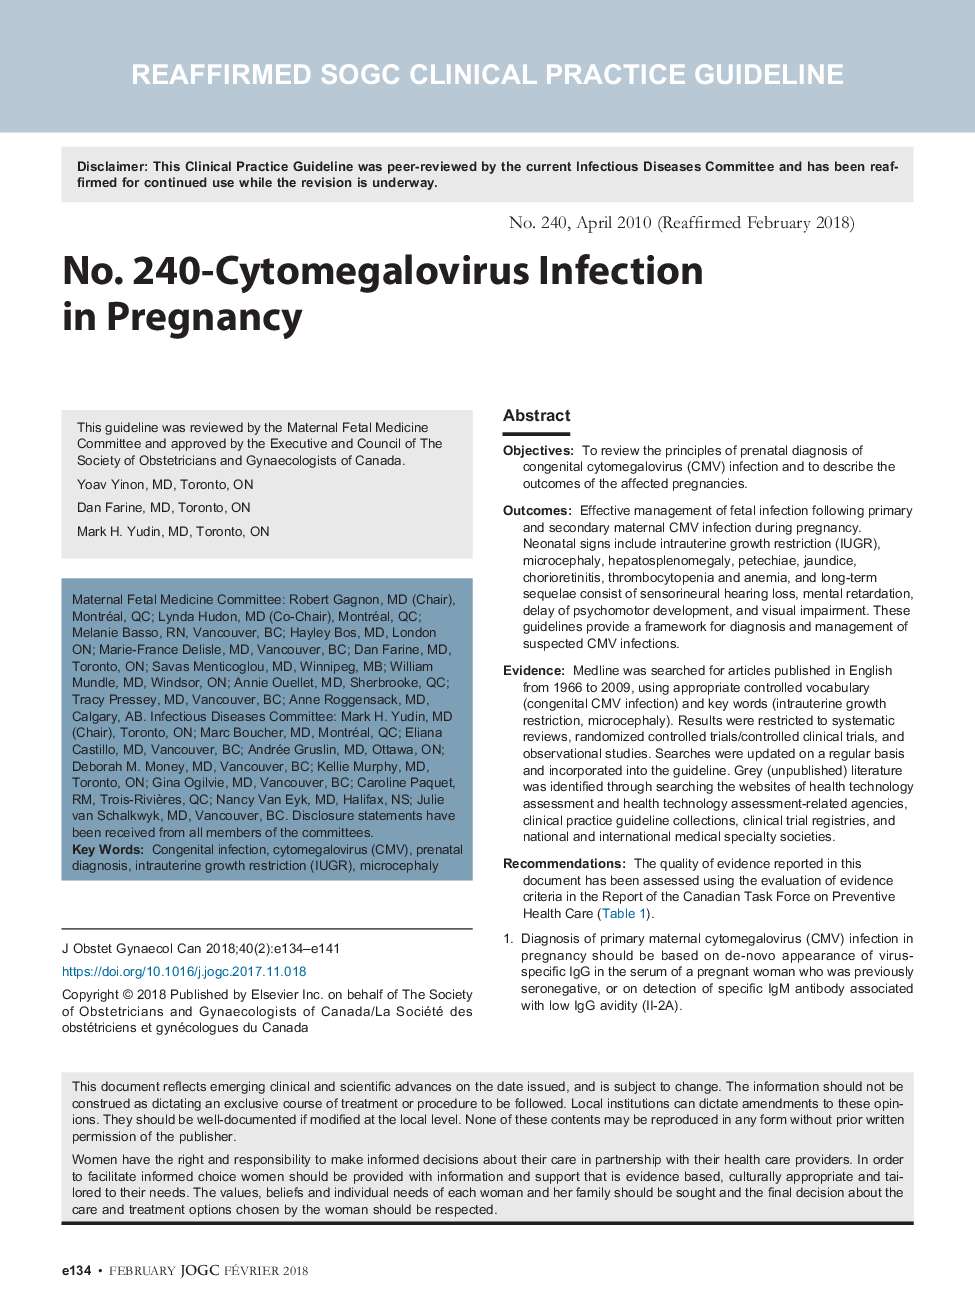 شماره 240- عفونت سیتومگالوویروس در بارداری 